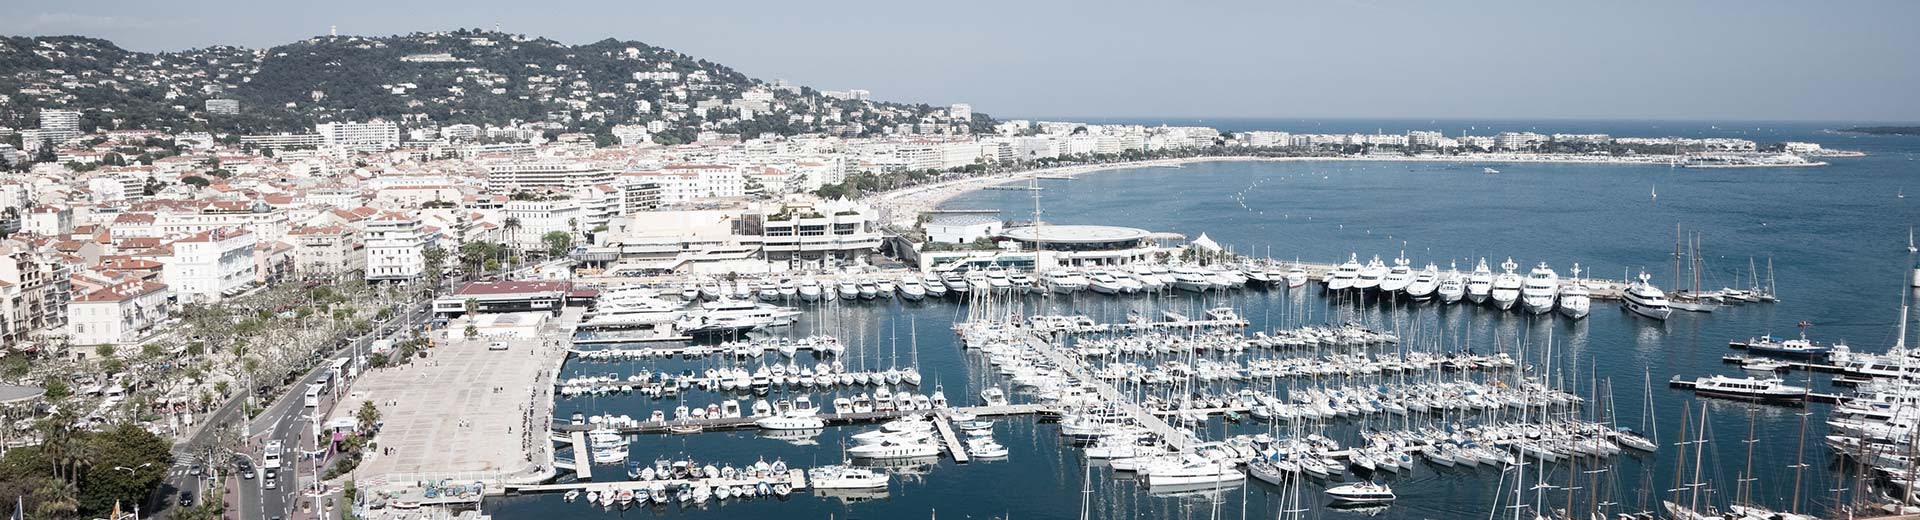 Barcos blancos y edificios blancos a lo largo de la orilla en un día despejado y soleado en Cannes.